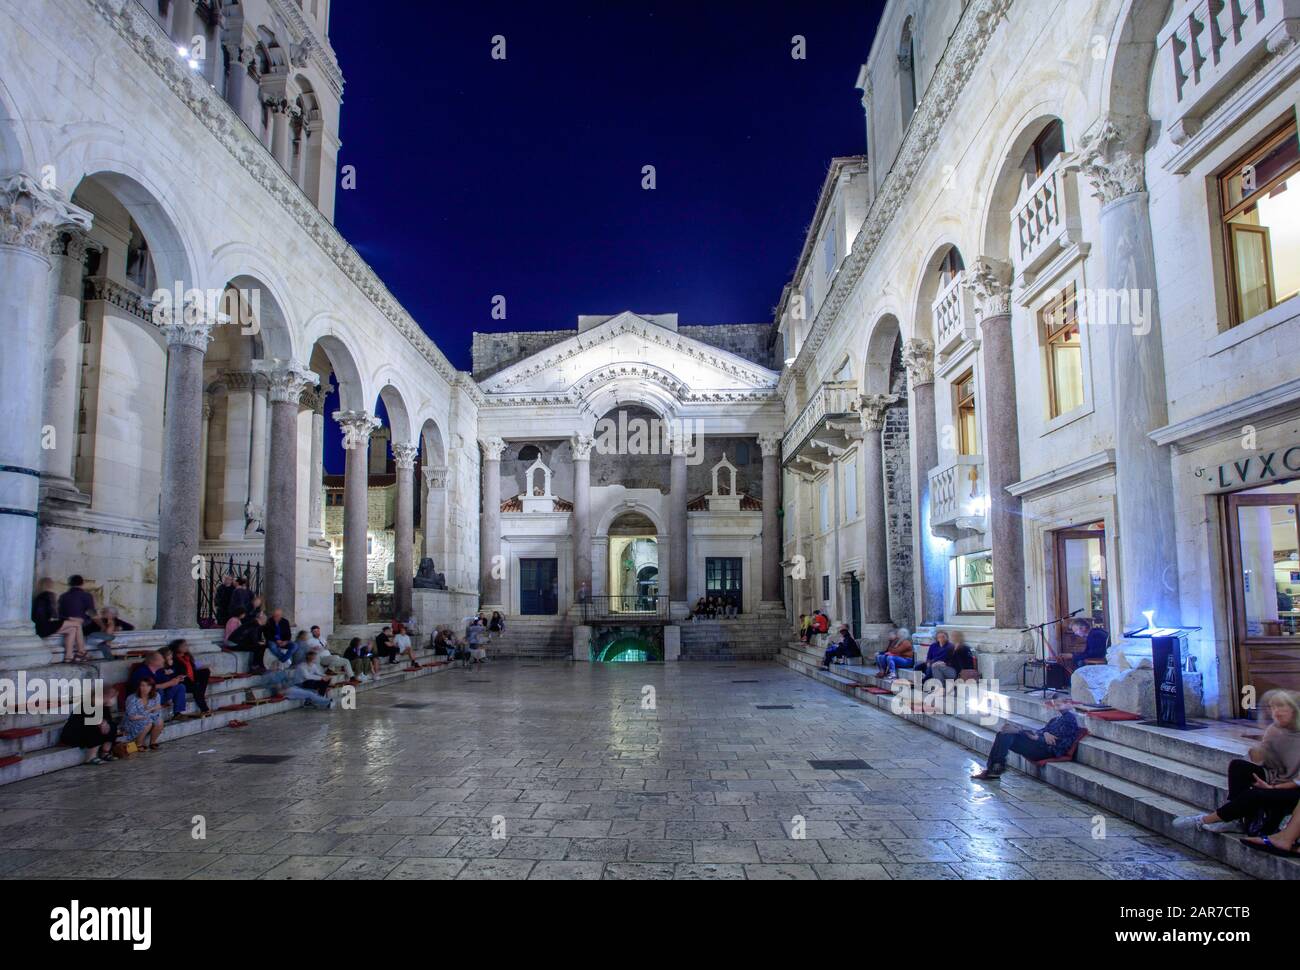 Les gens écoutent de la musique dans le palais de Dioclétien, Split. Croatie Banque D'Images